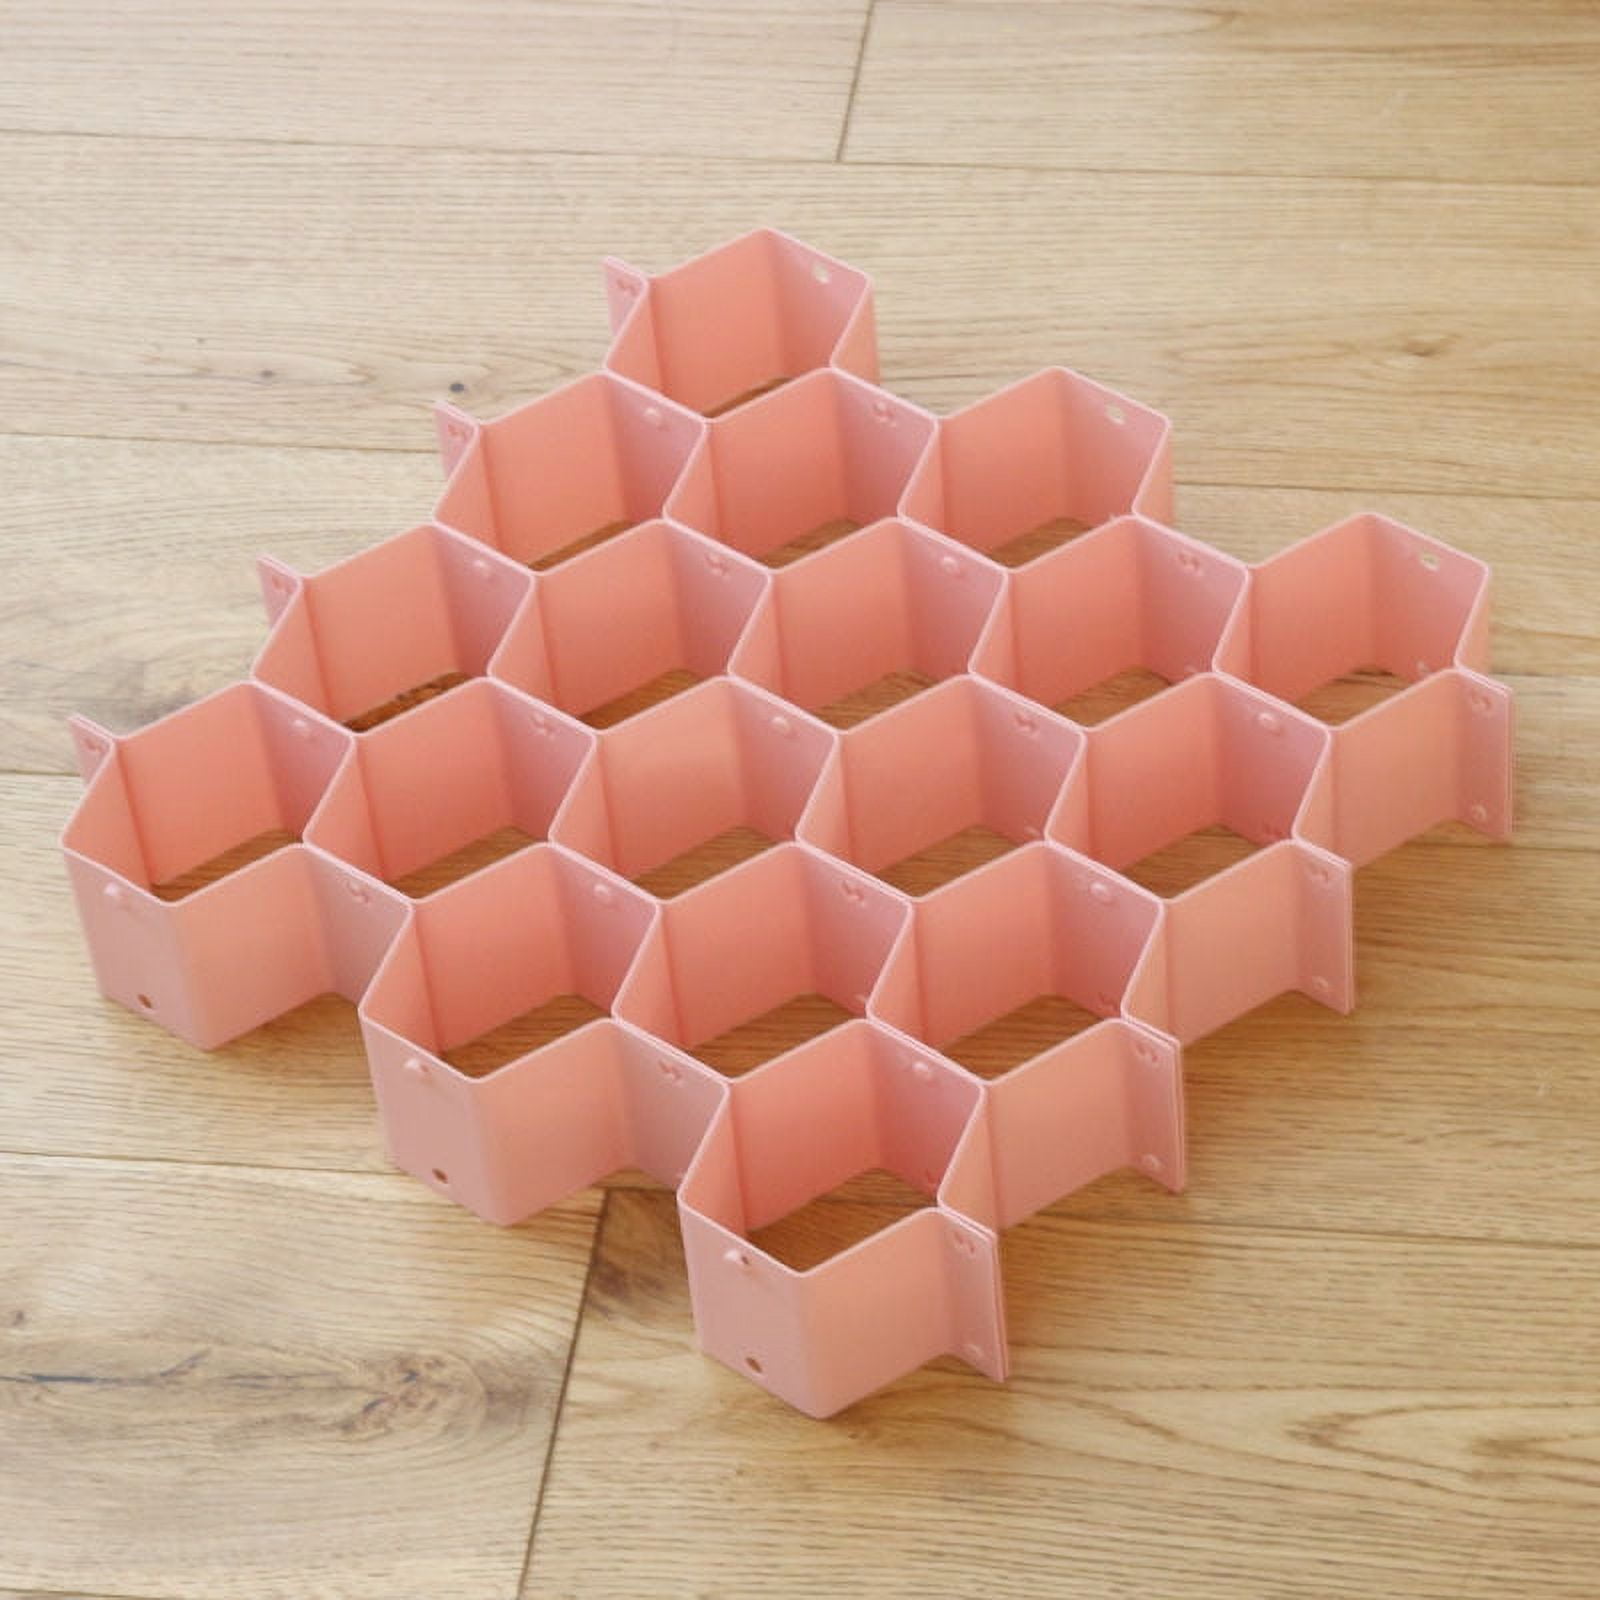 Anncus ABS Plastic DIY Honeycomb Wardrobe Drawer Divider Storage